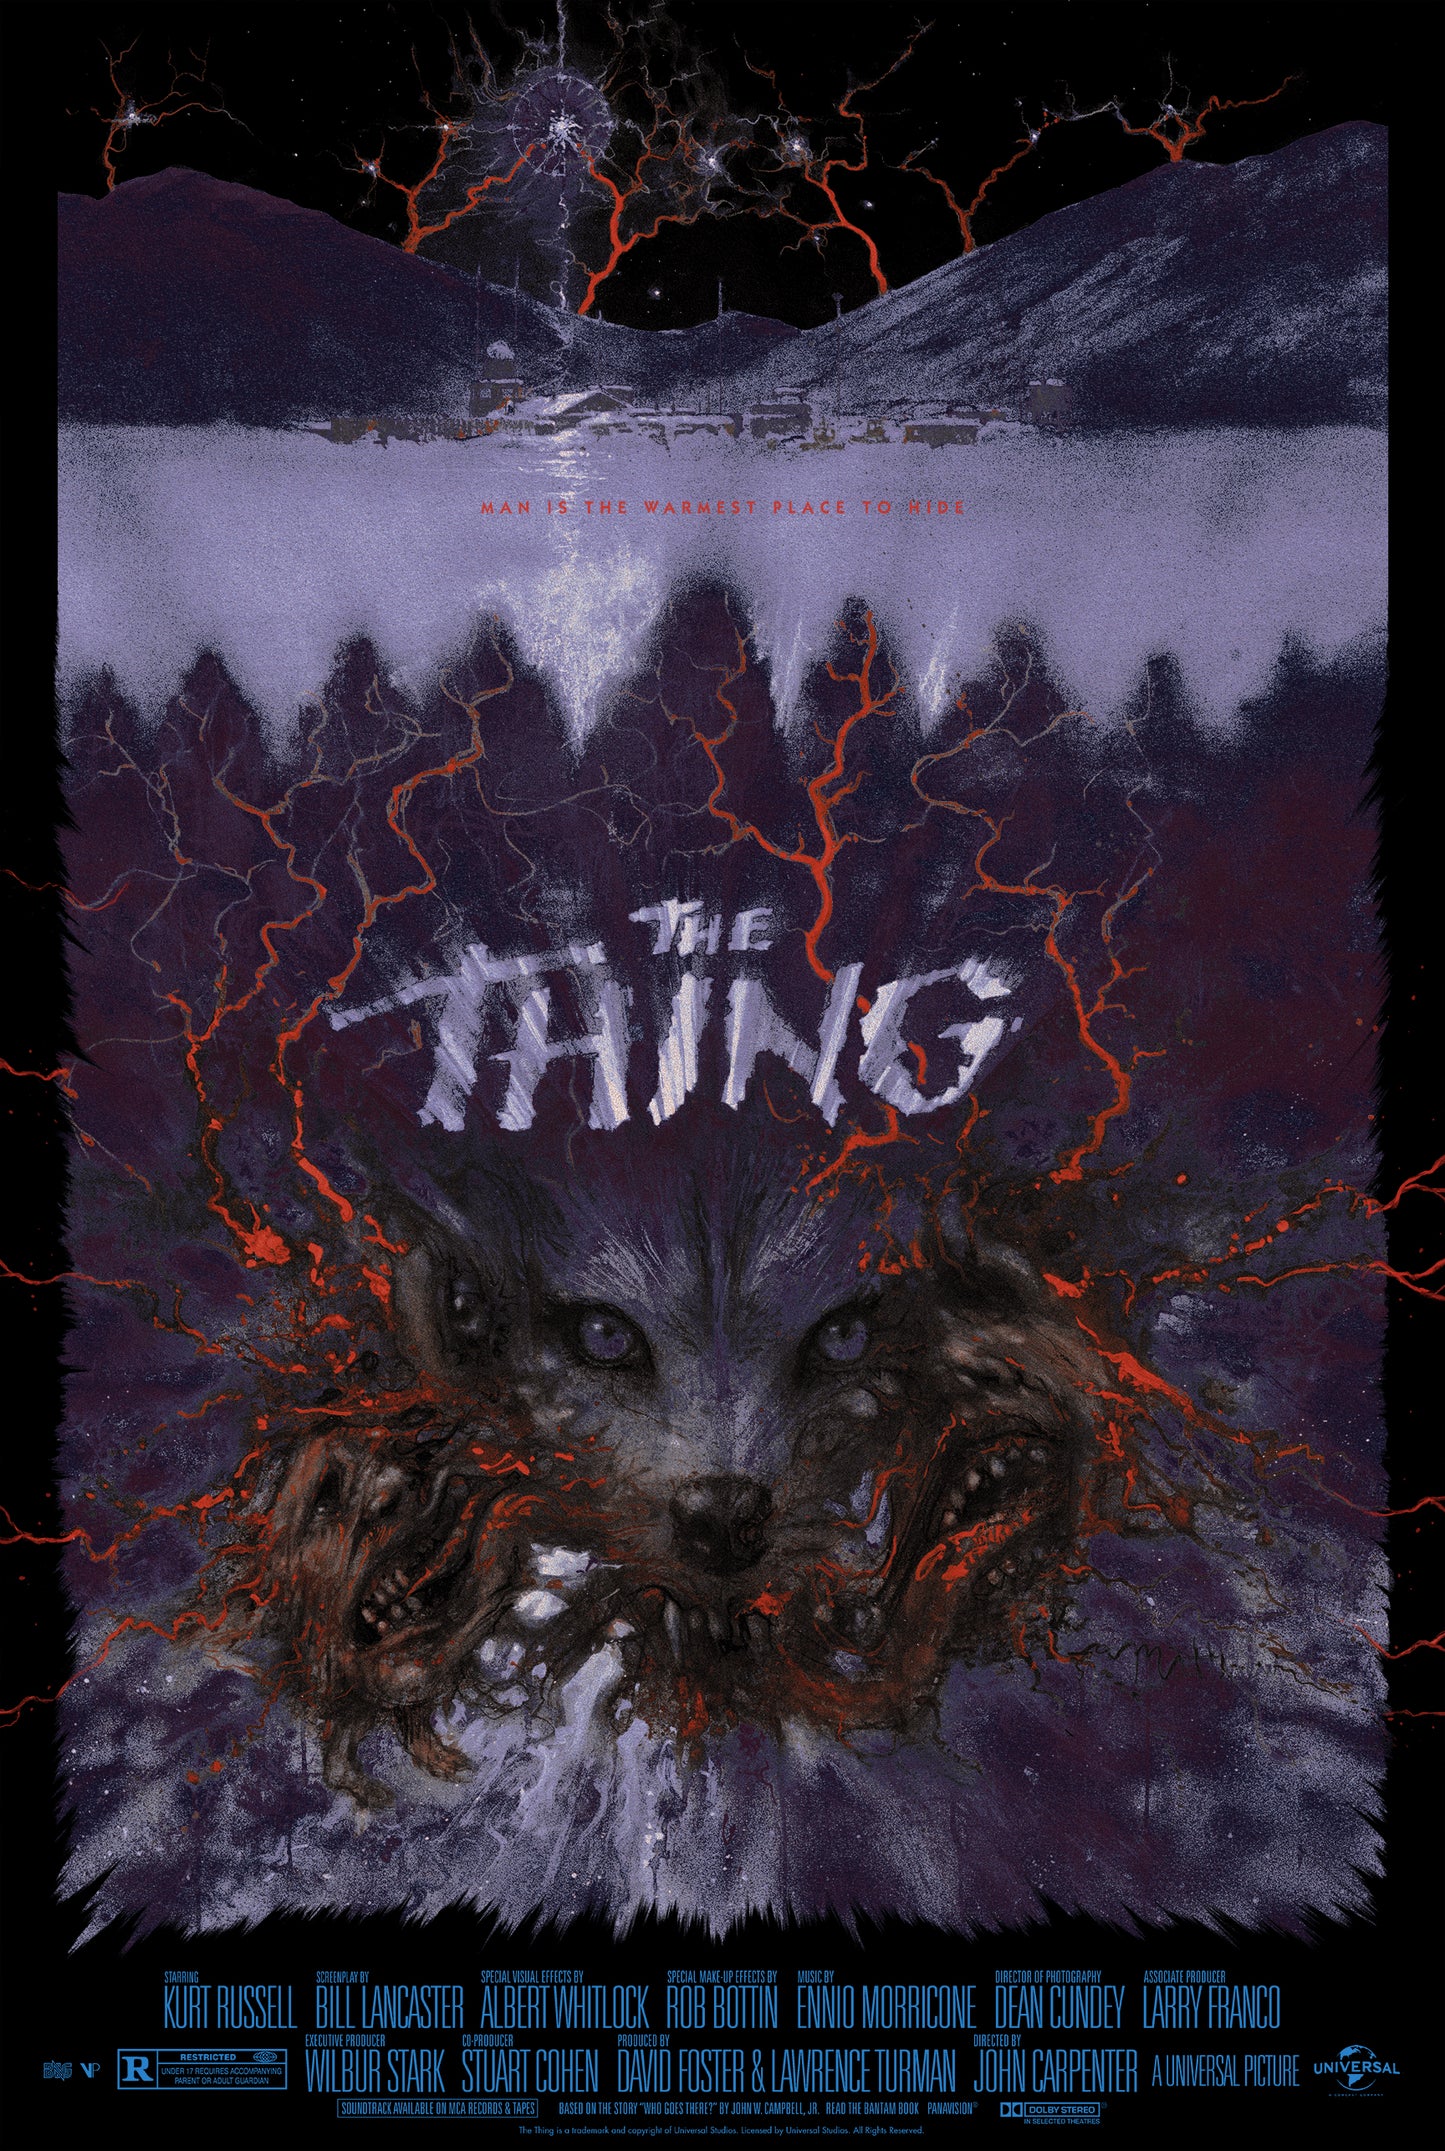 Matthew Peak "The Thing" Variant AP